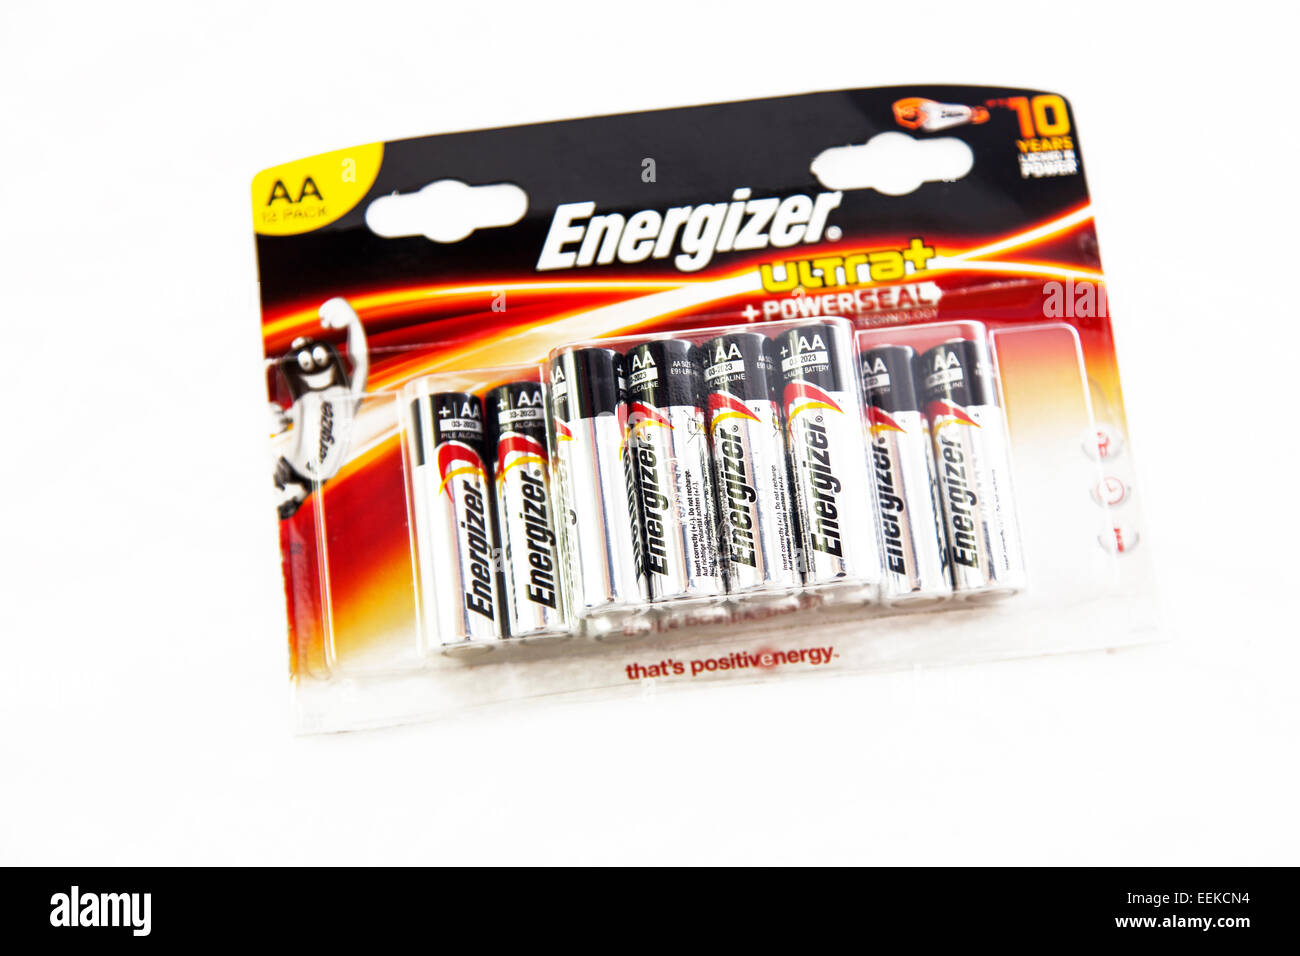 Energizer - Pack de 3 - Energizer, Power Plus Rechargeable AA/HR6, pack de  4 Piles